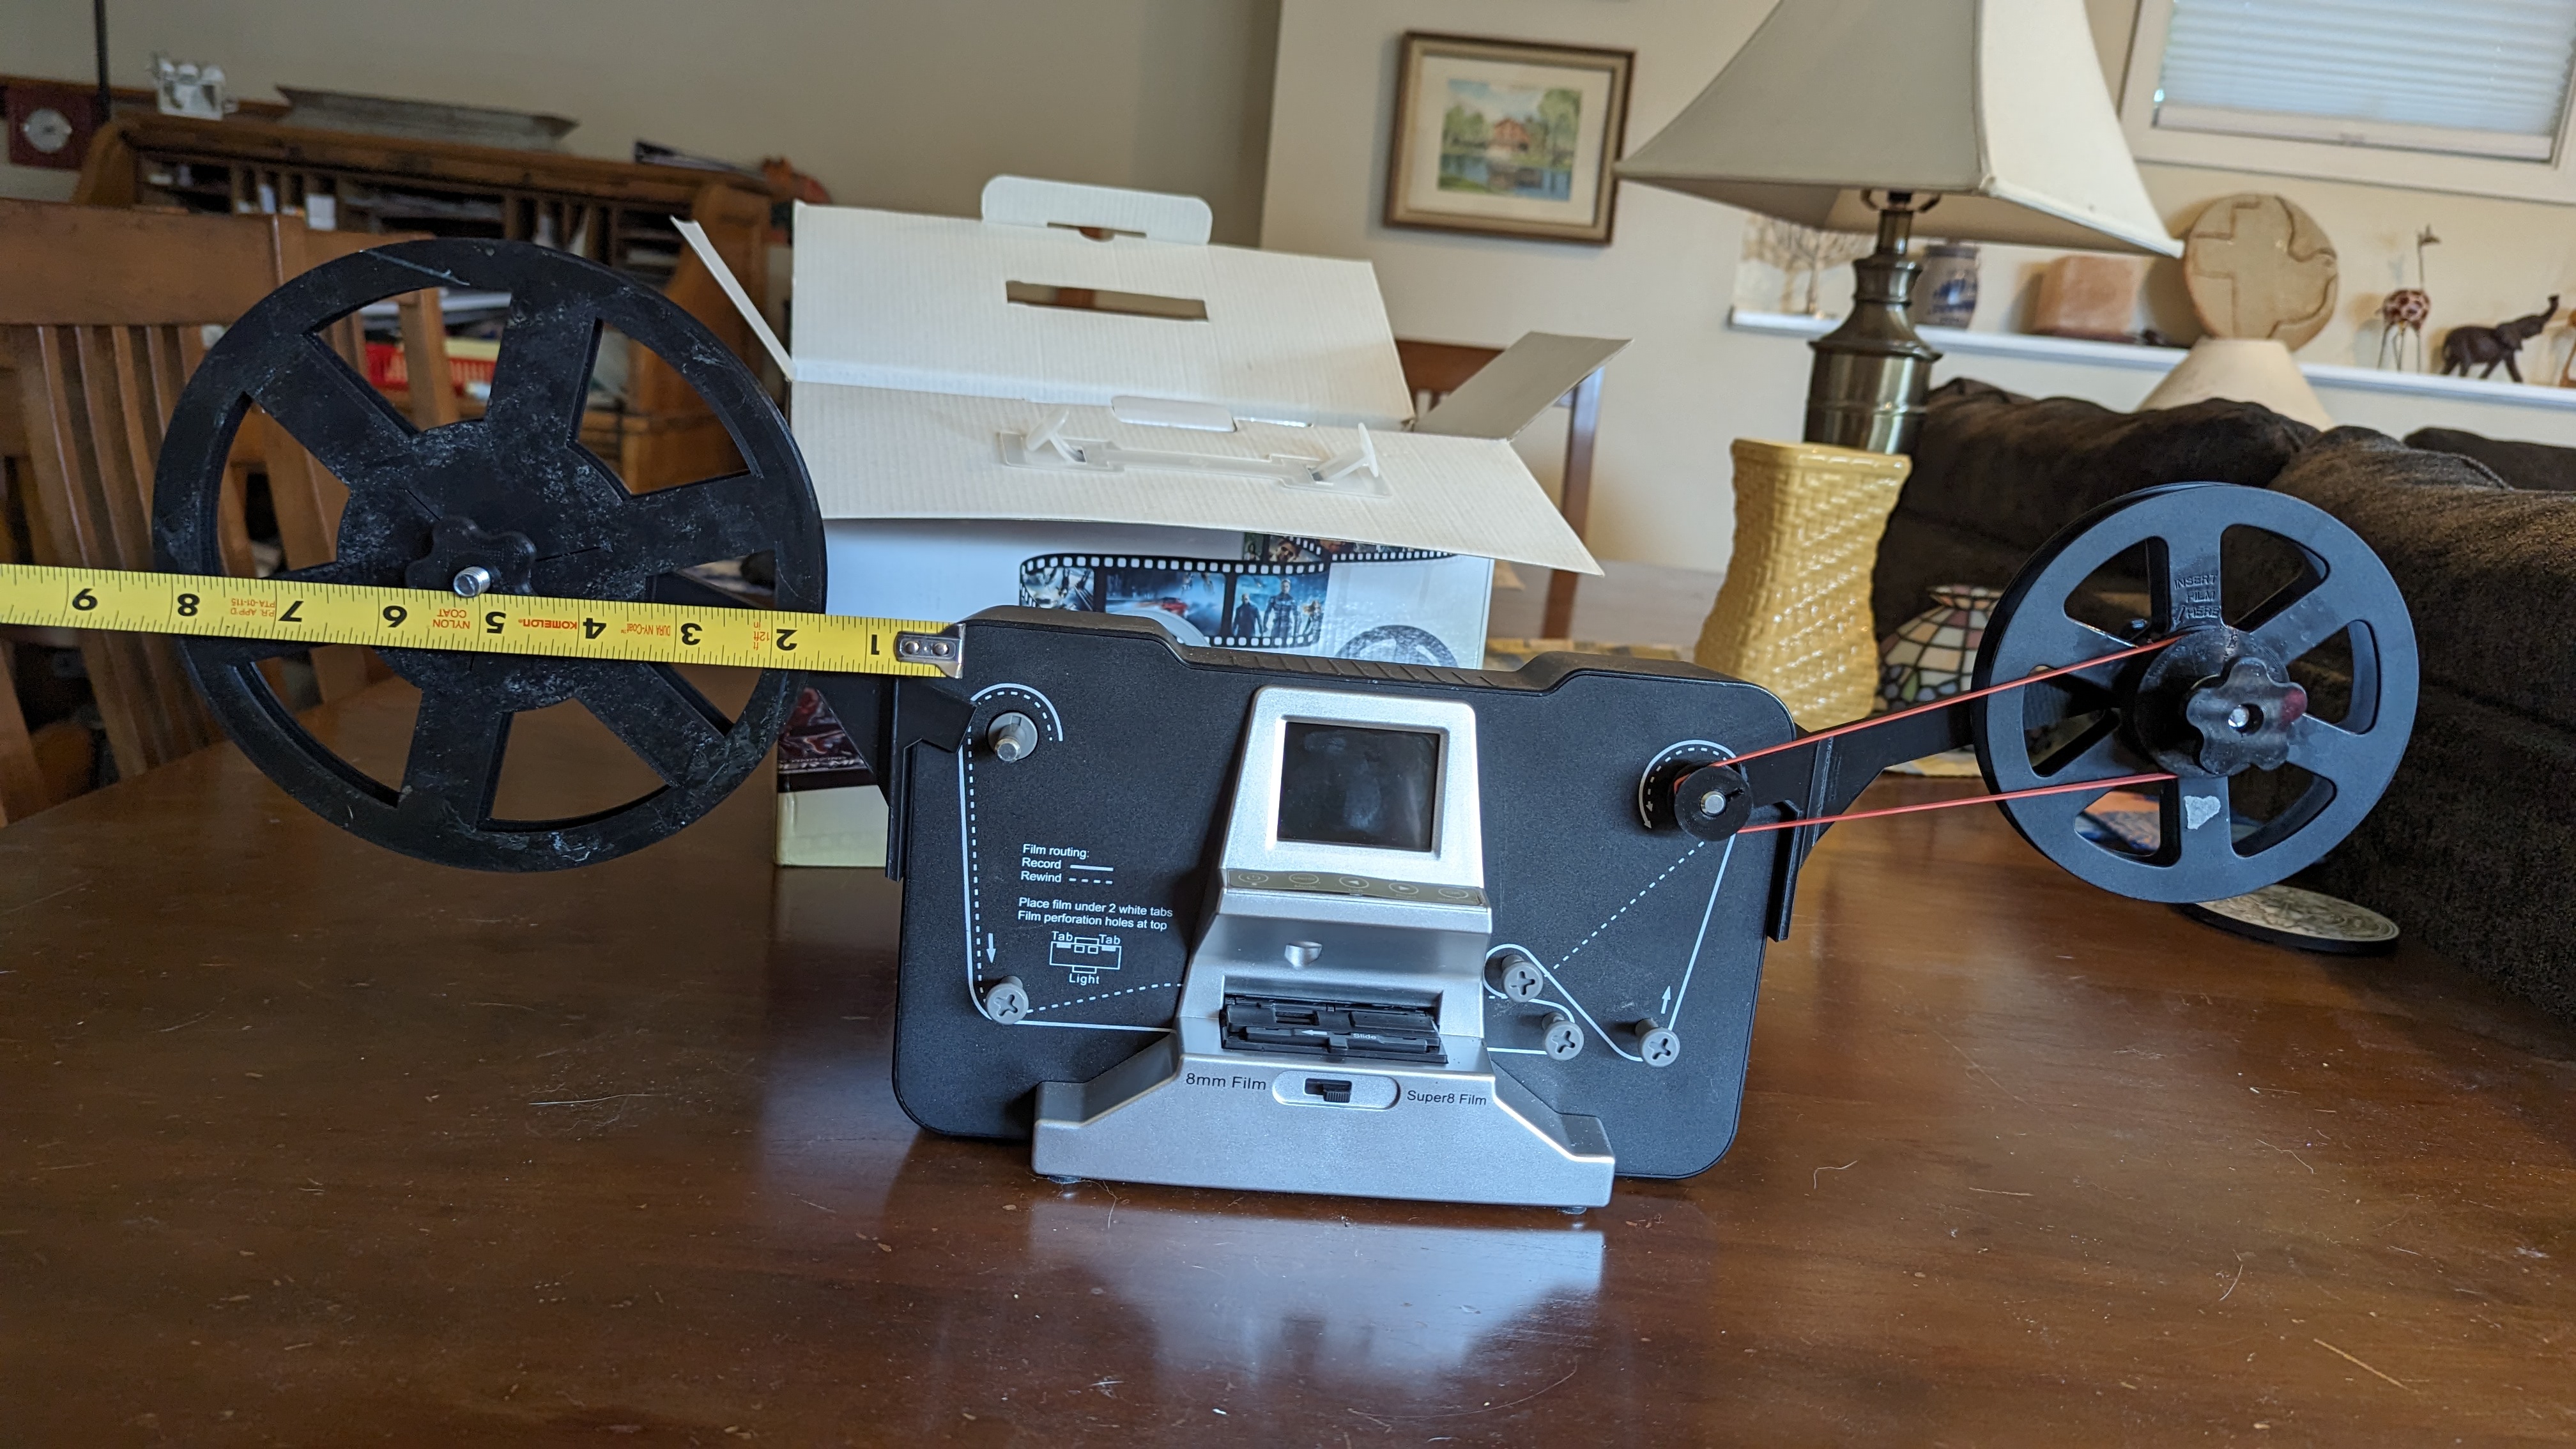 Wolverine 8mm / Super8 Film Scanner Mod for Larger Film Reels by